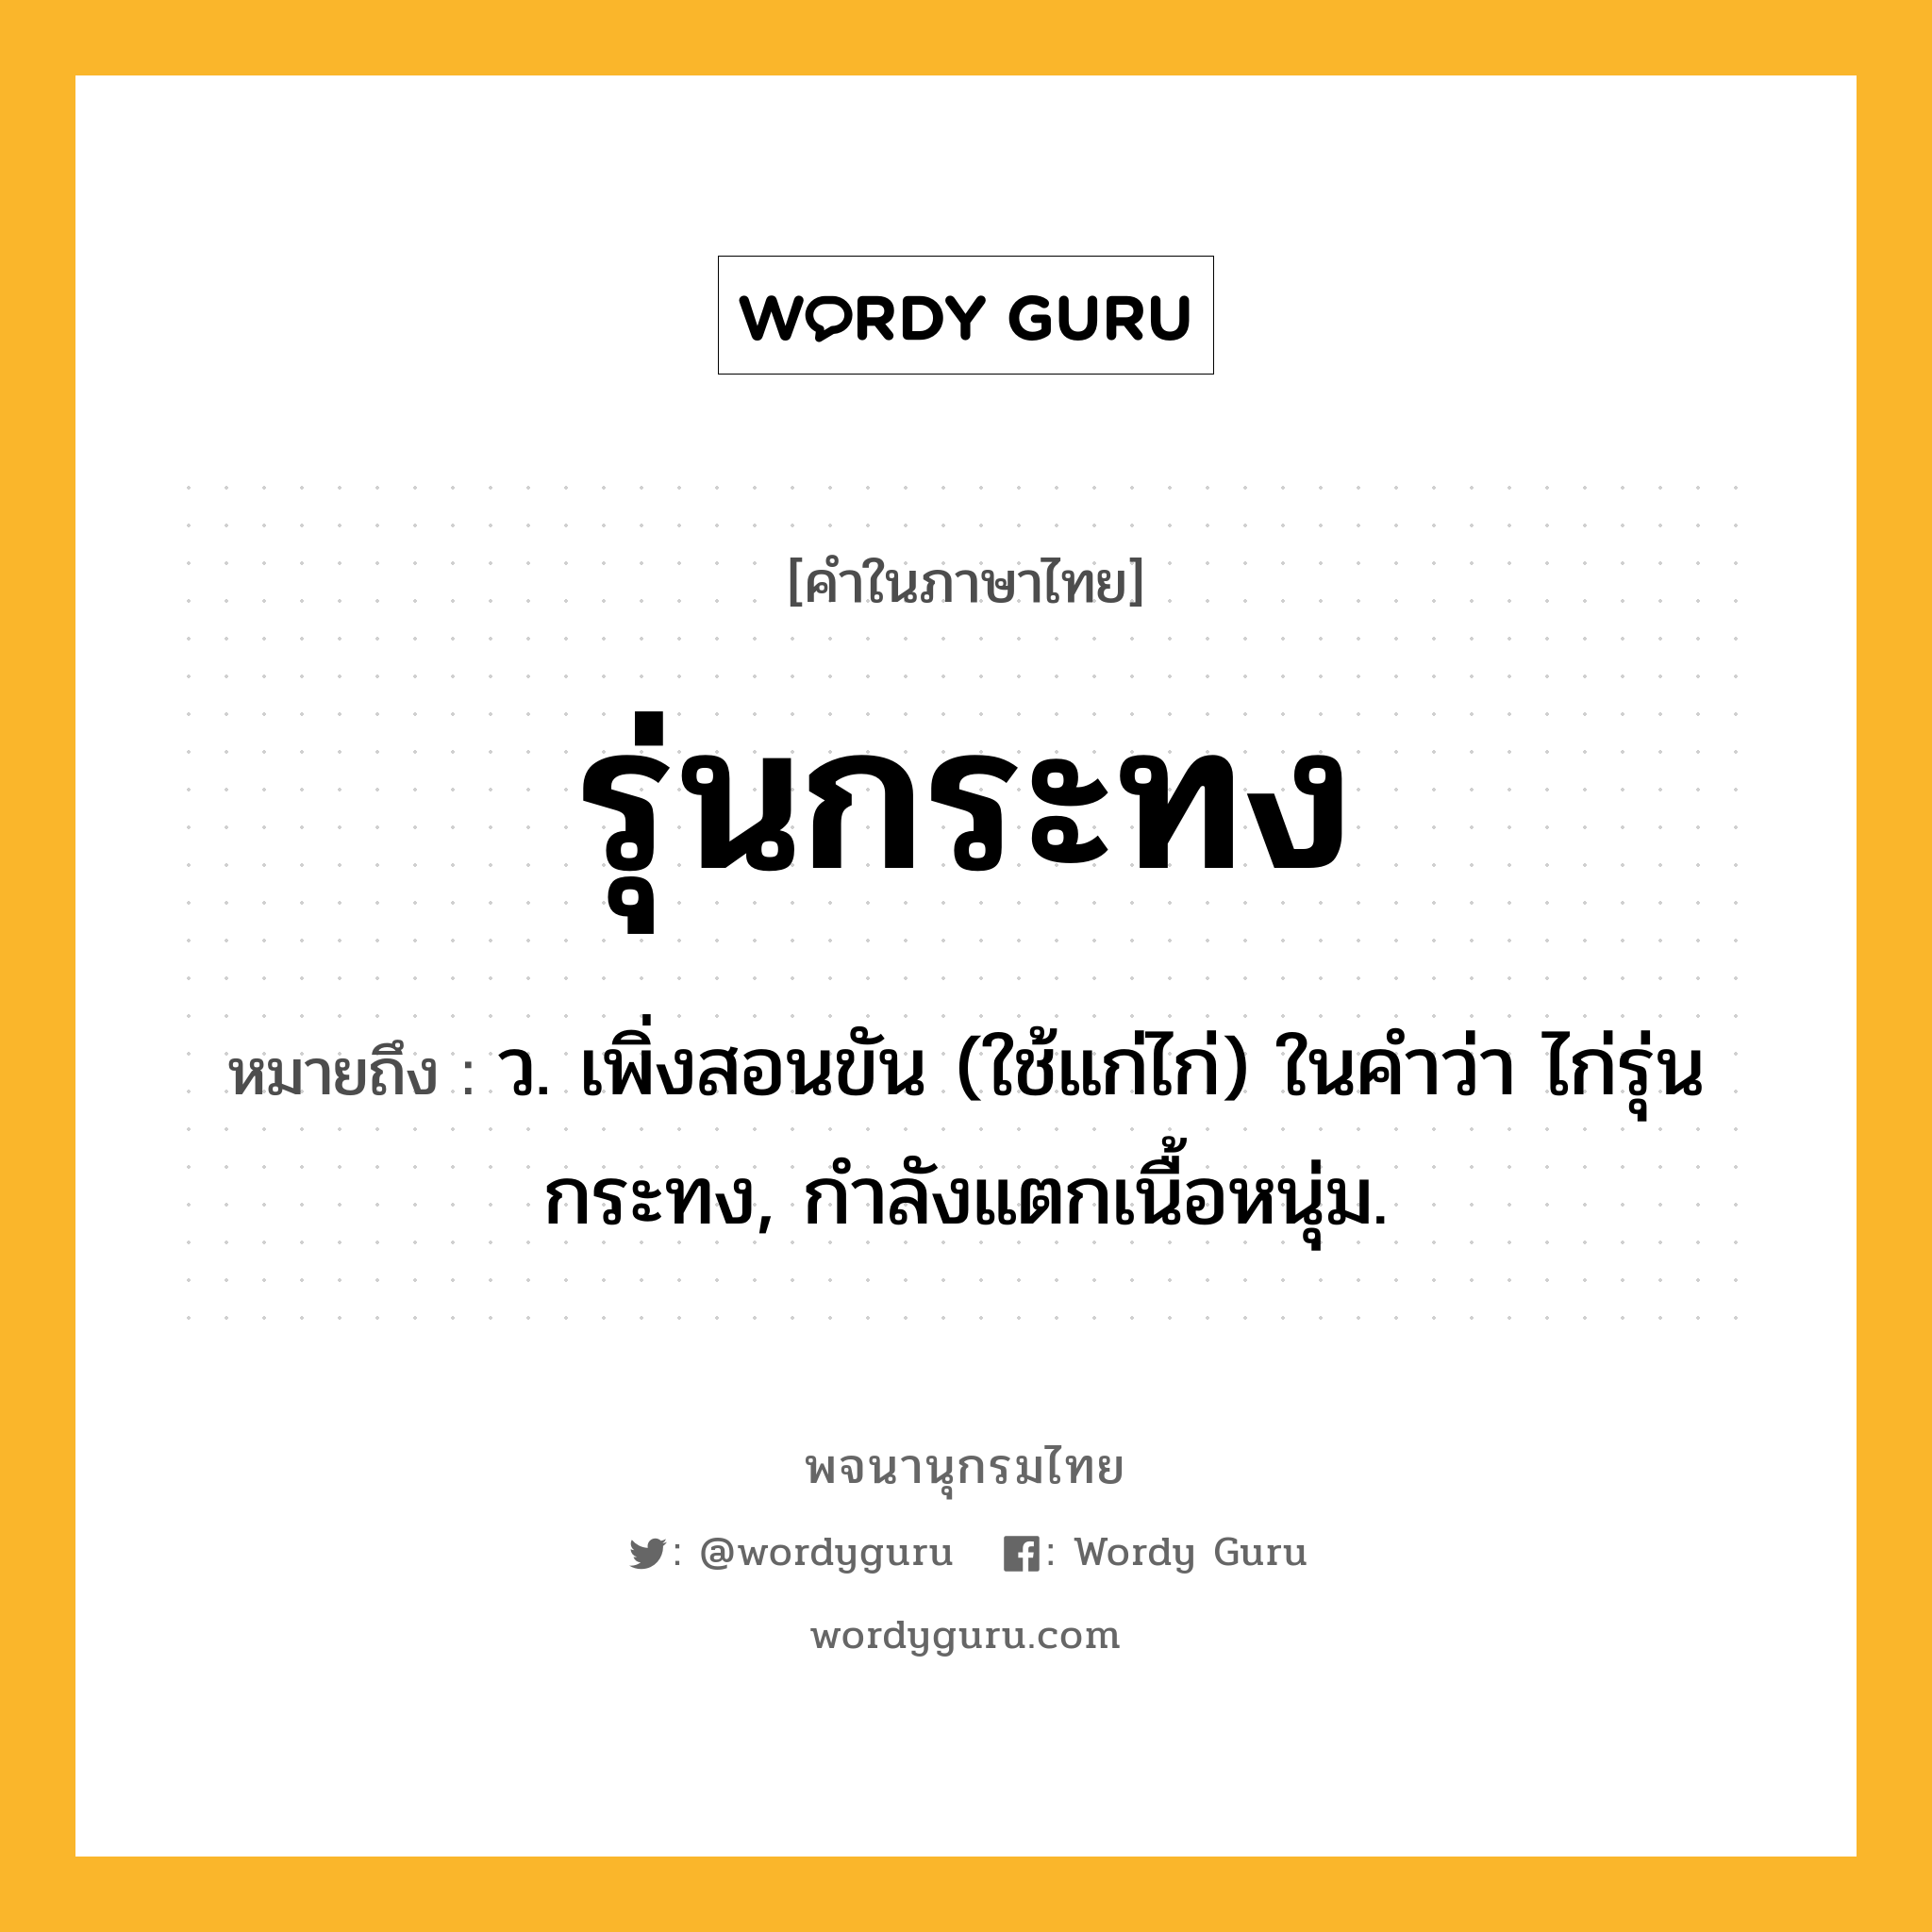 รุ่นกระทง ความหมาย หมายถึงอะไร?, คำในภาษาไทย รุ่นกระทง หมายถึง ว. เพิ่งสอนขัน (ใช้แก่ไก่) ในคำว่า ไก่รุ่นกระทง, กำลังแตกเนื้อหนุ่ม.